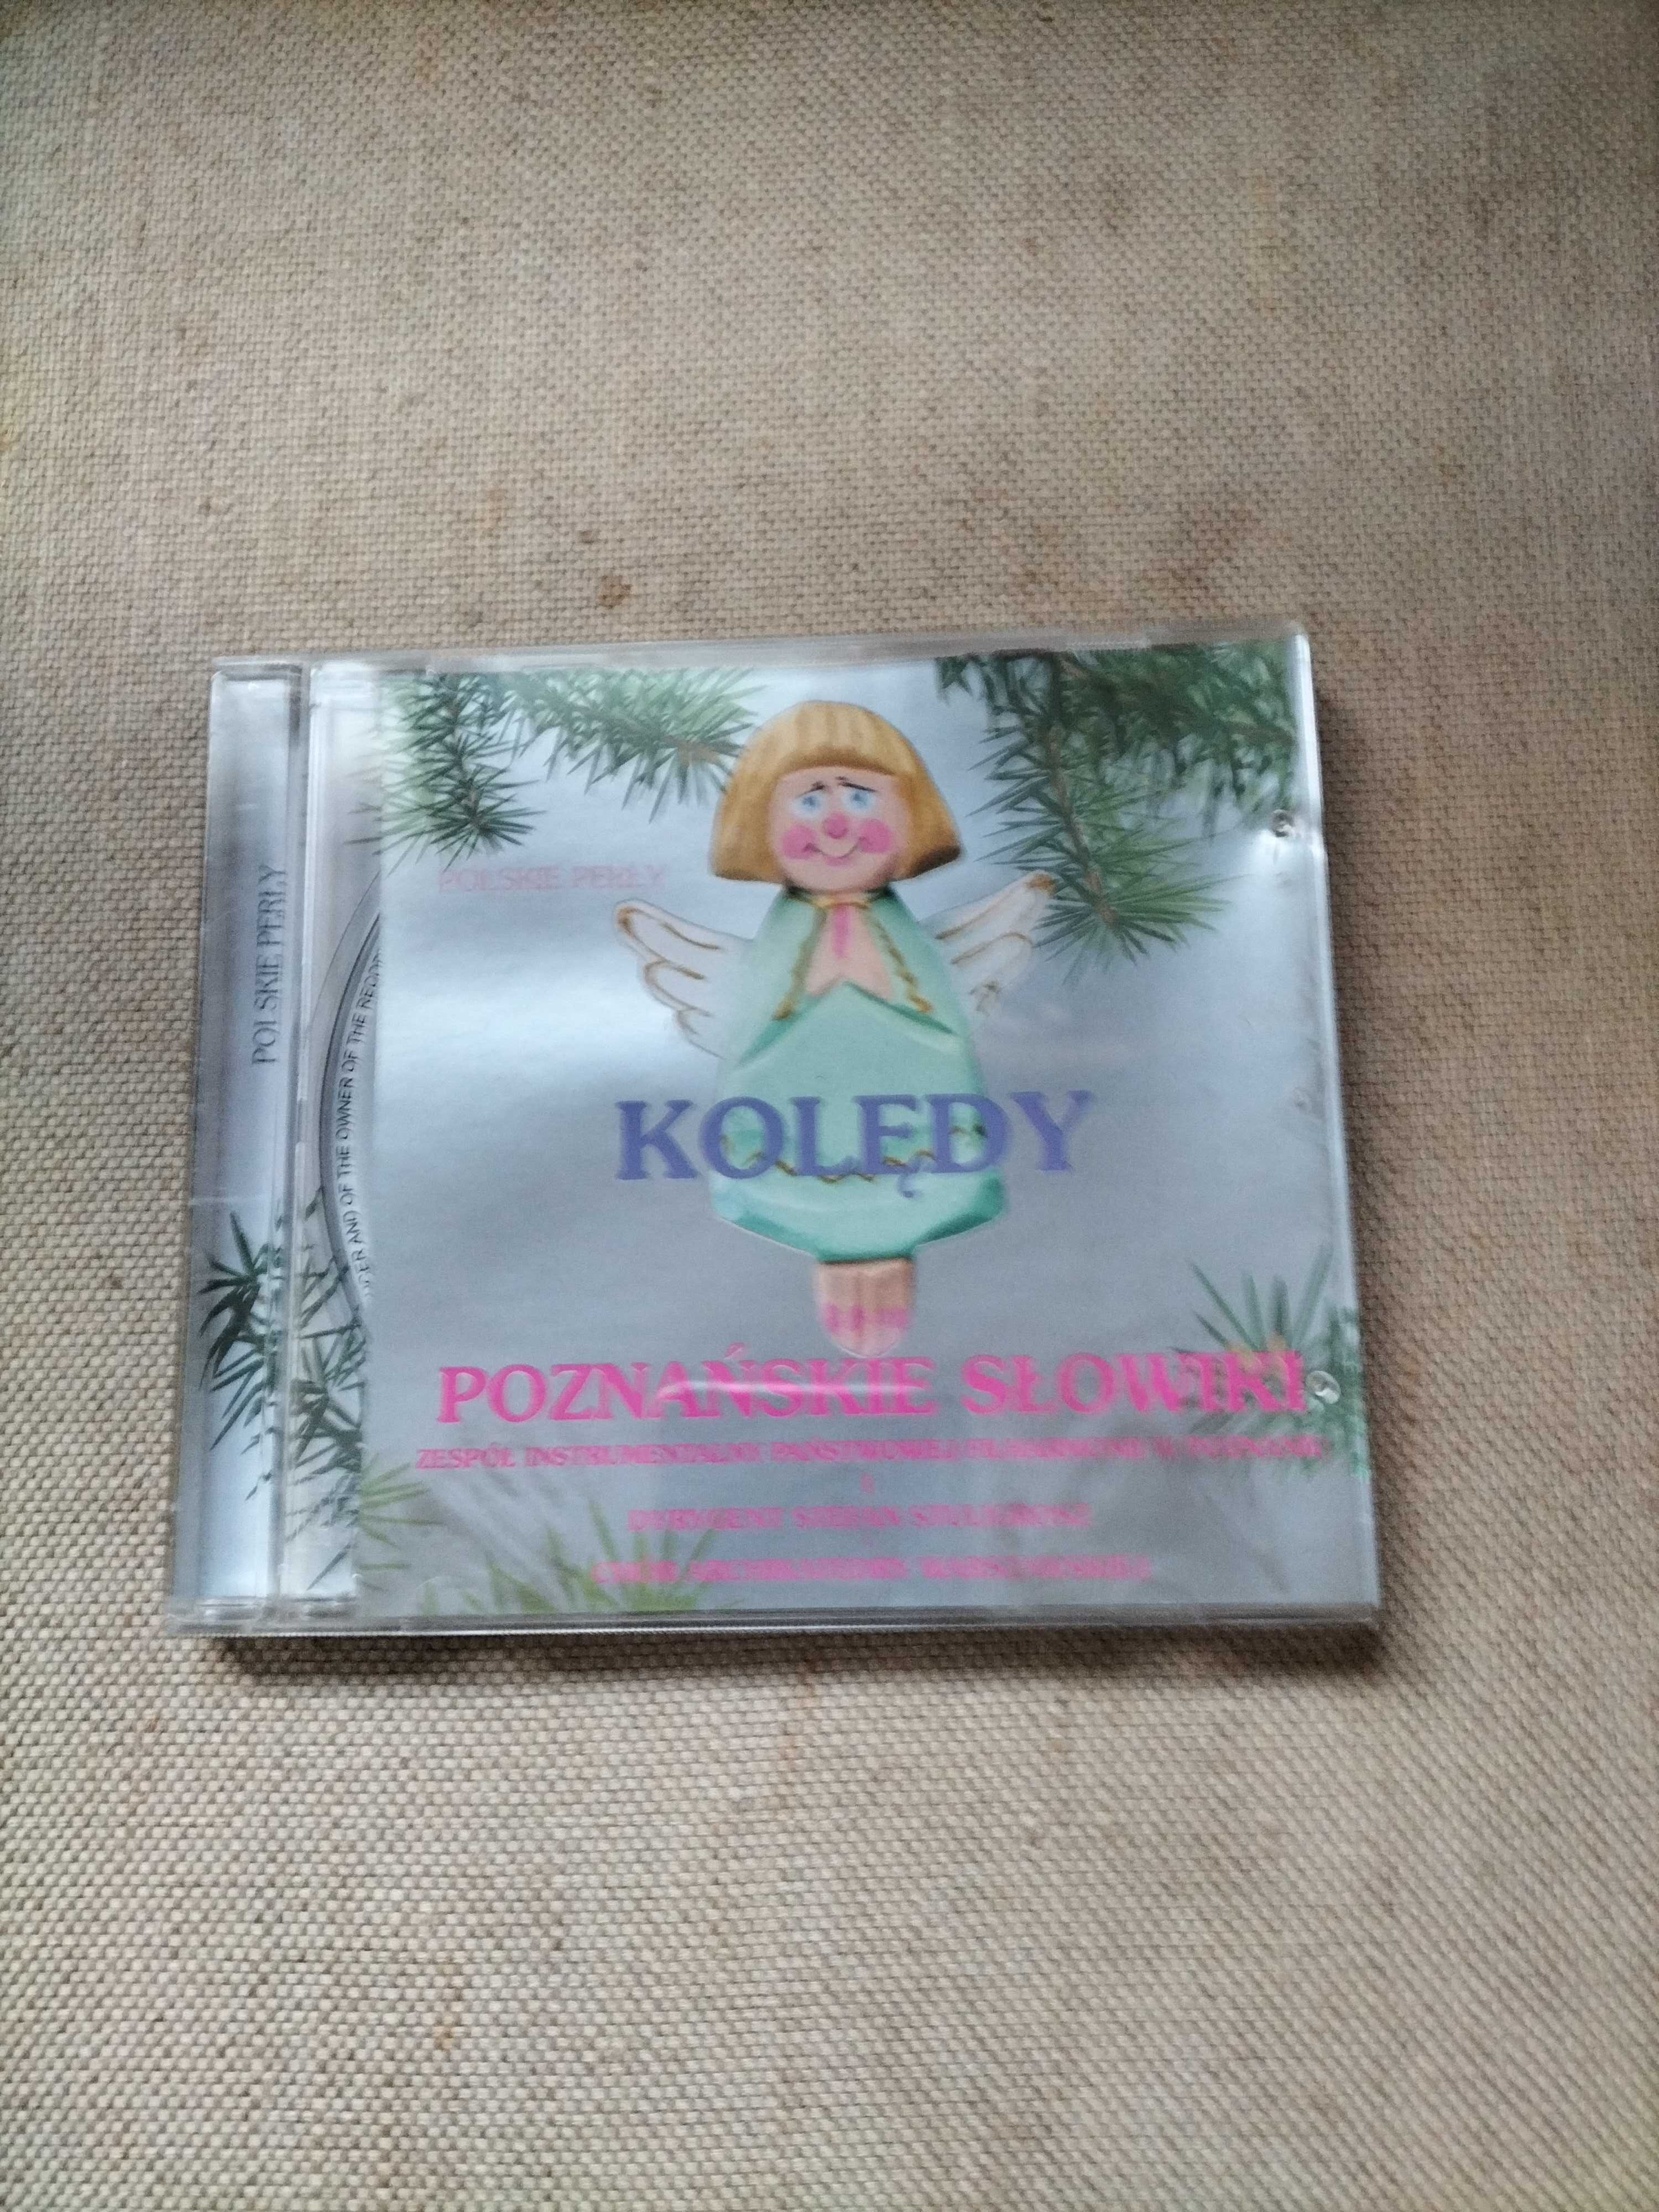 Nowe CD  Poznańskie Słowiki " Kolędy "